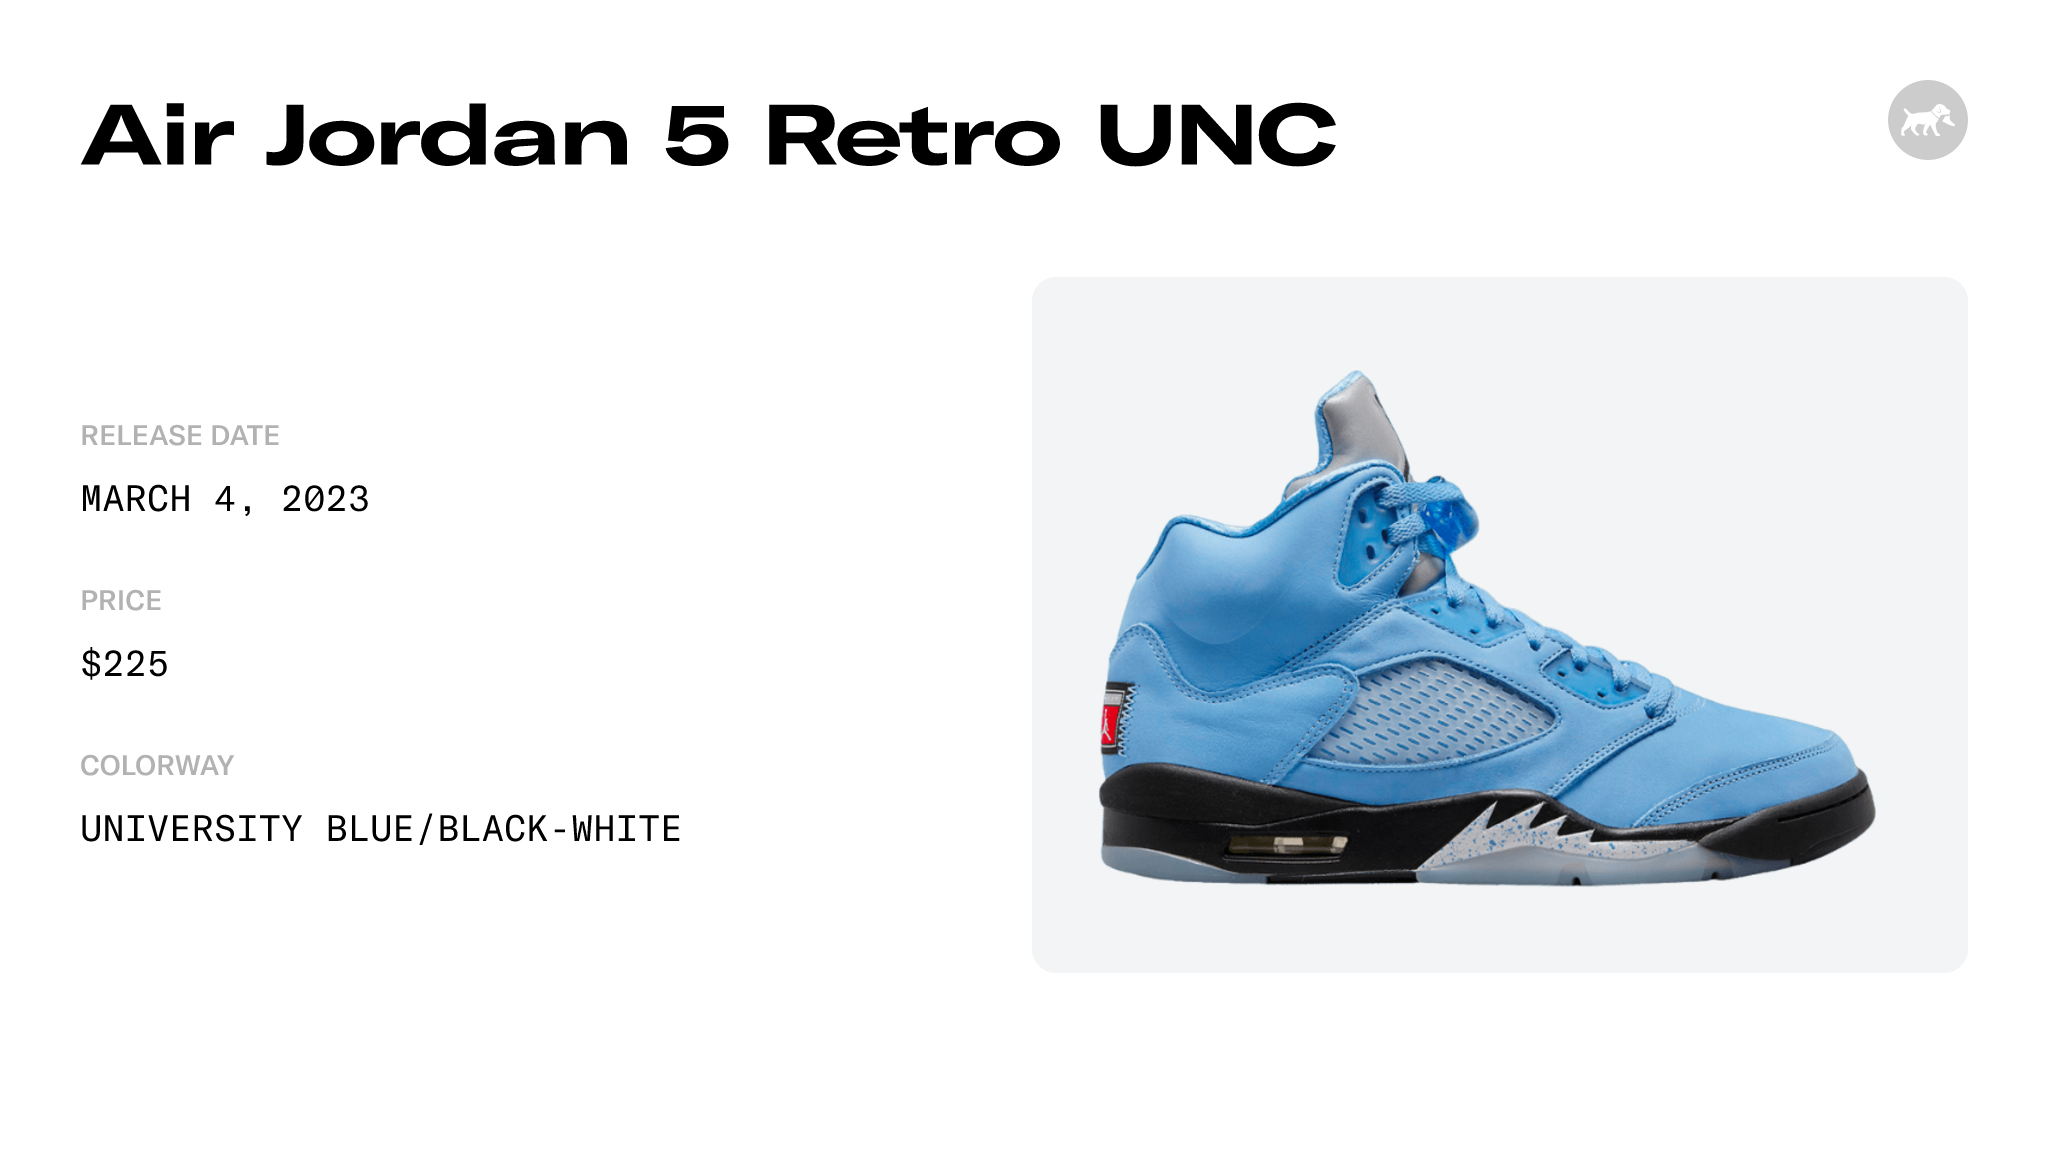 Air Jordan 5 'UNC' Release Date